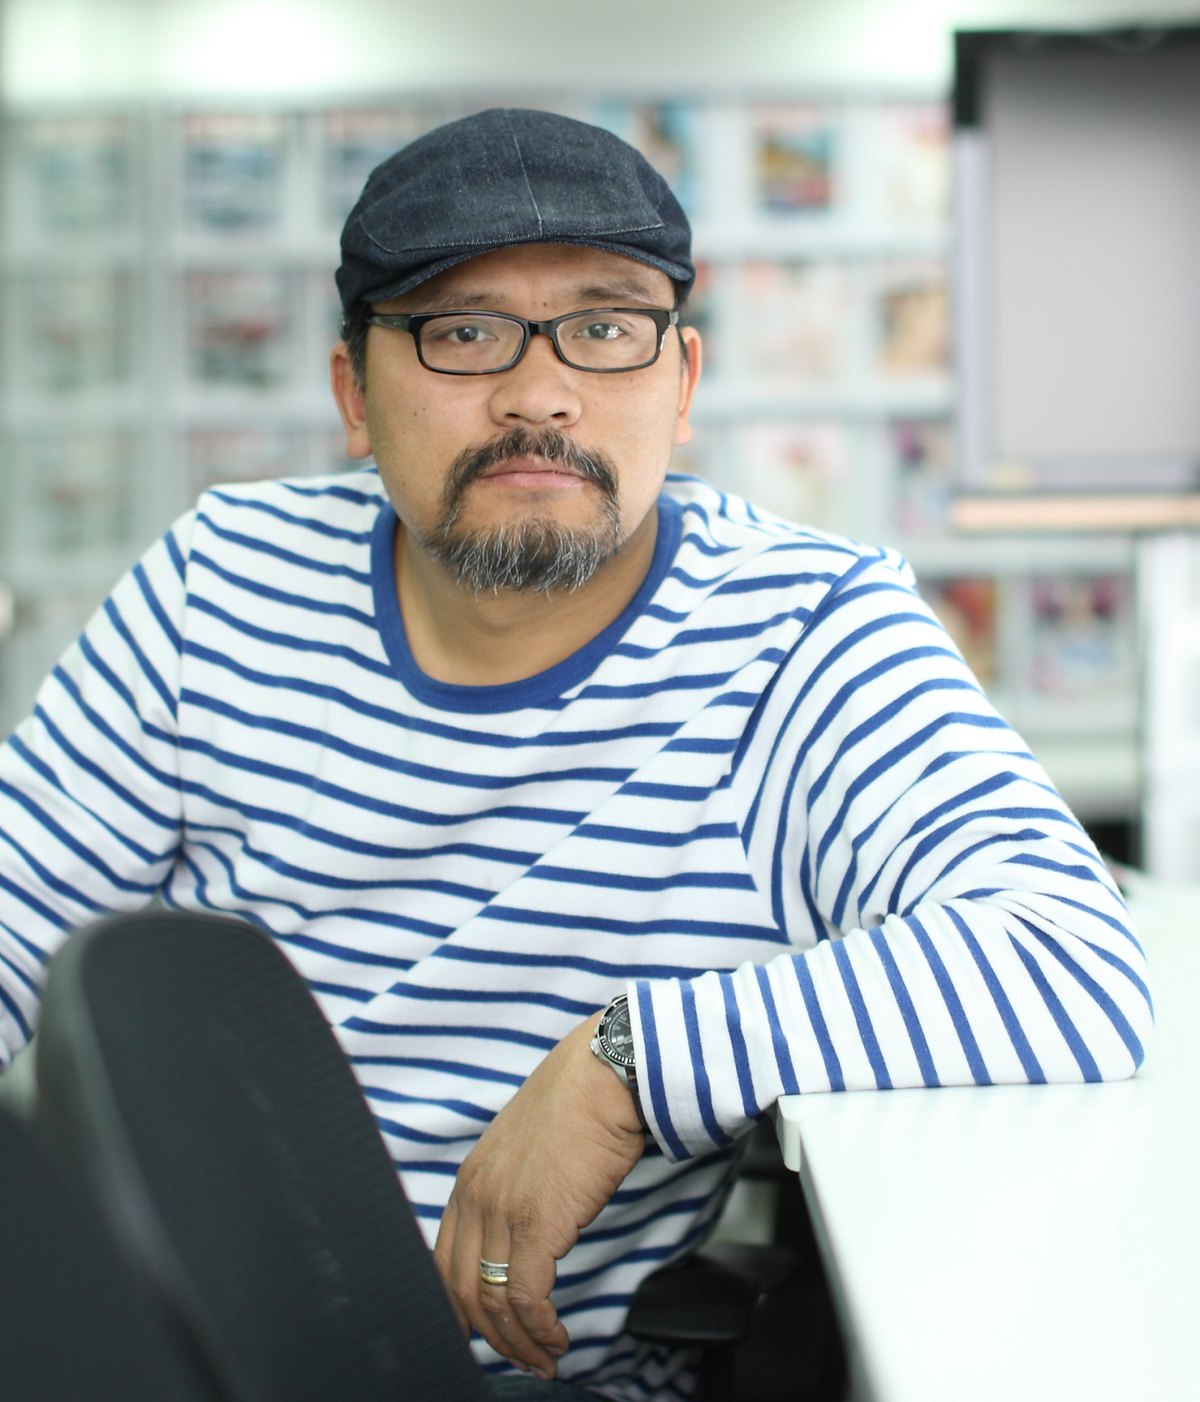 刘杰《名车志》首席摄影师兼创意总监。